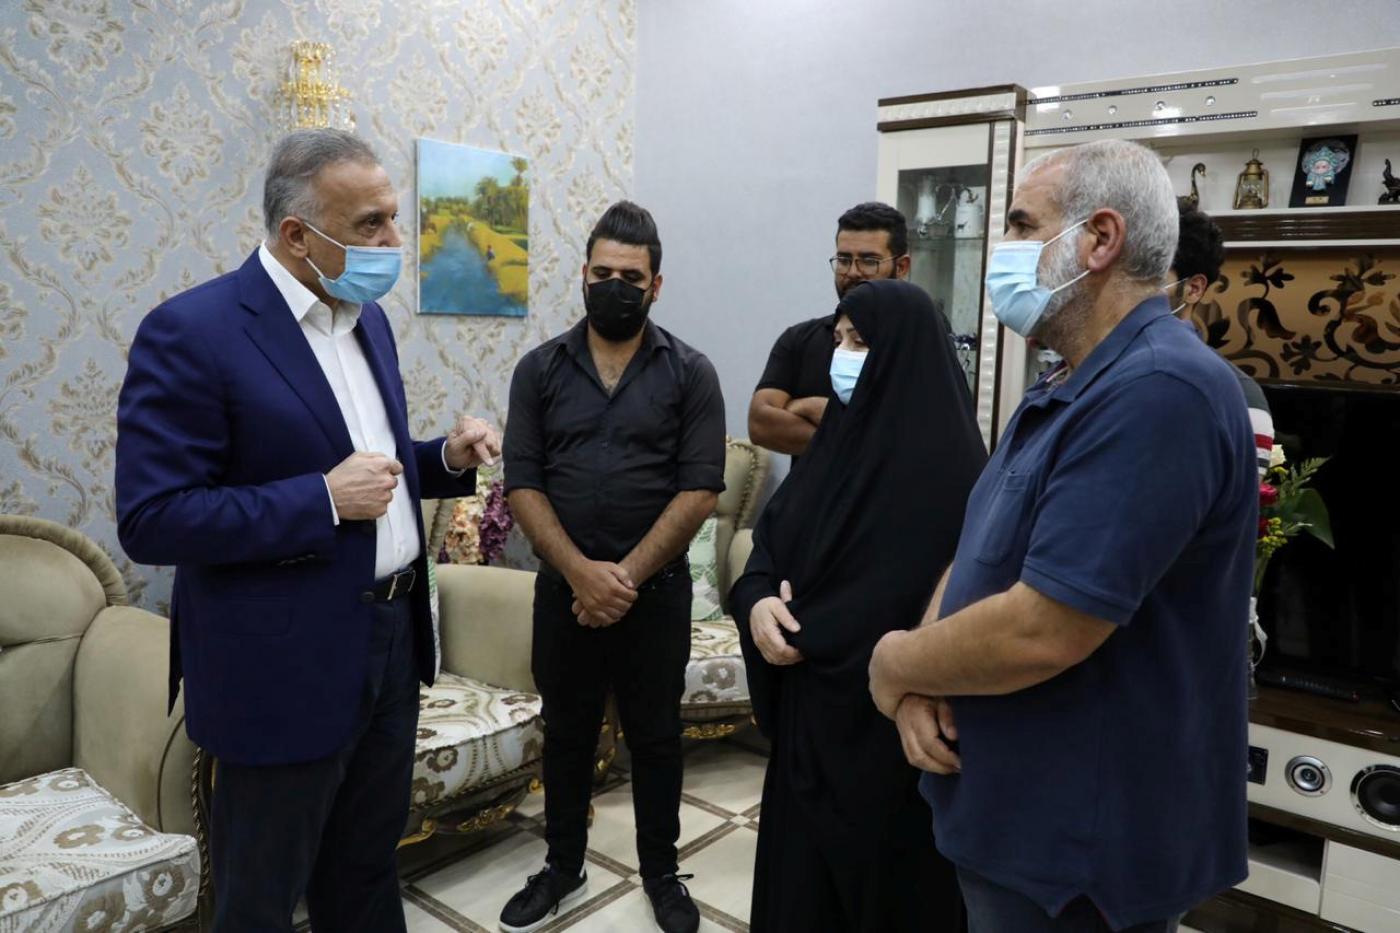 Le Premier ministre irakien Mustafa al-Kadhimi (à gauche) présente ses condoléances à la famille de Riham Yacoub lors d’une visite à Bassorah, le 23 août (Reuters)